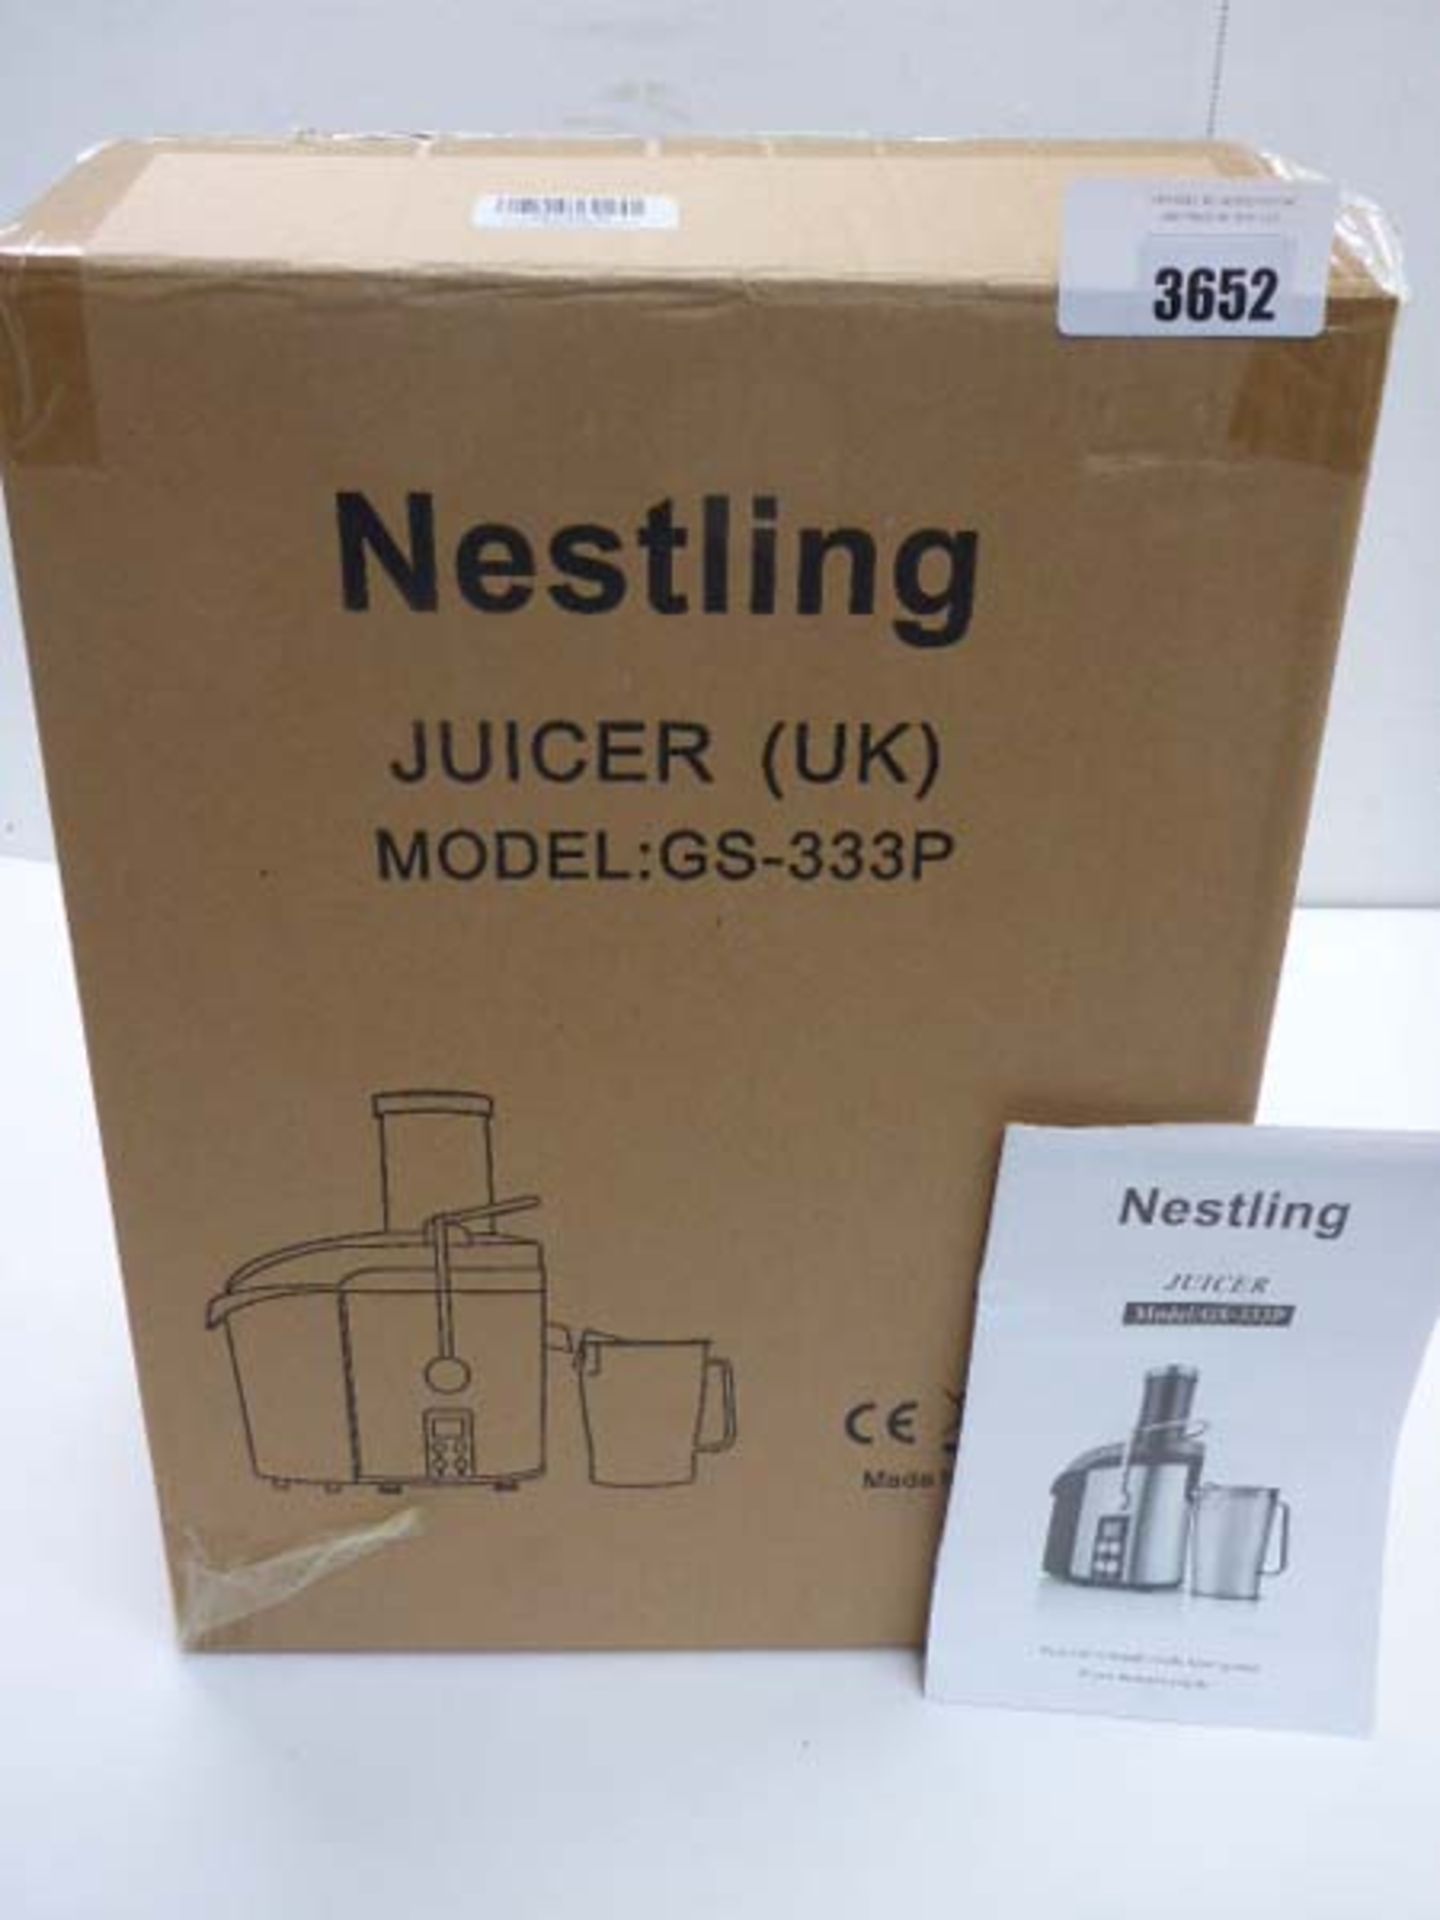 Nestling GS-333P juicer